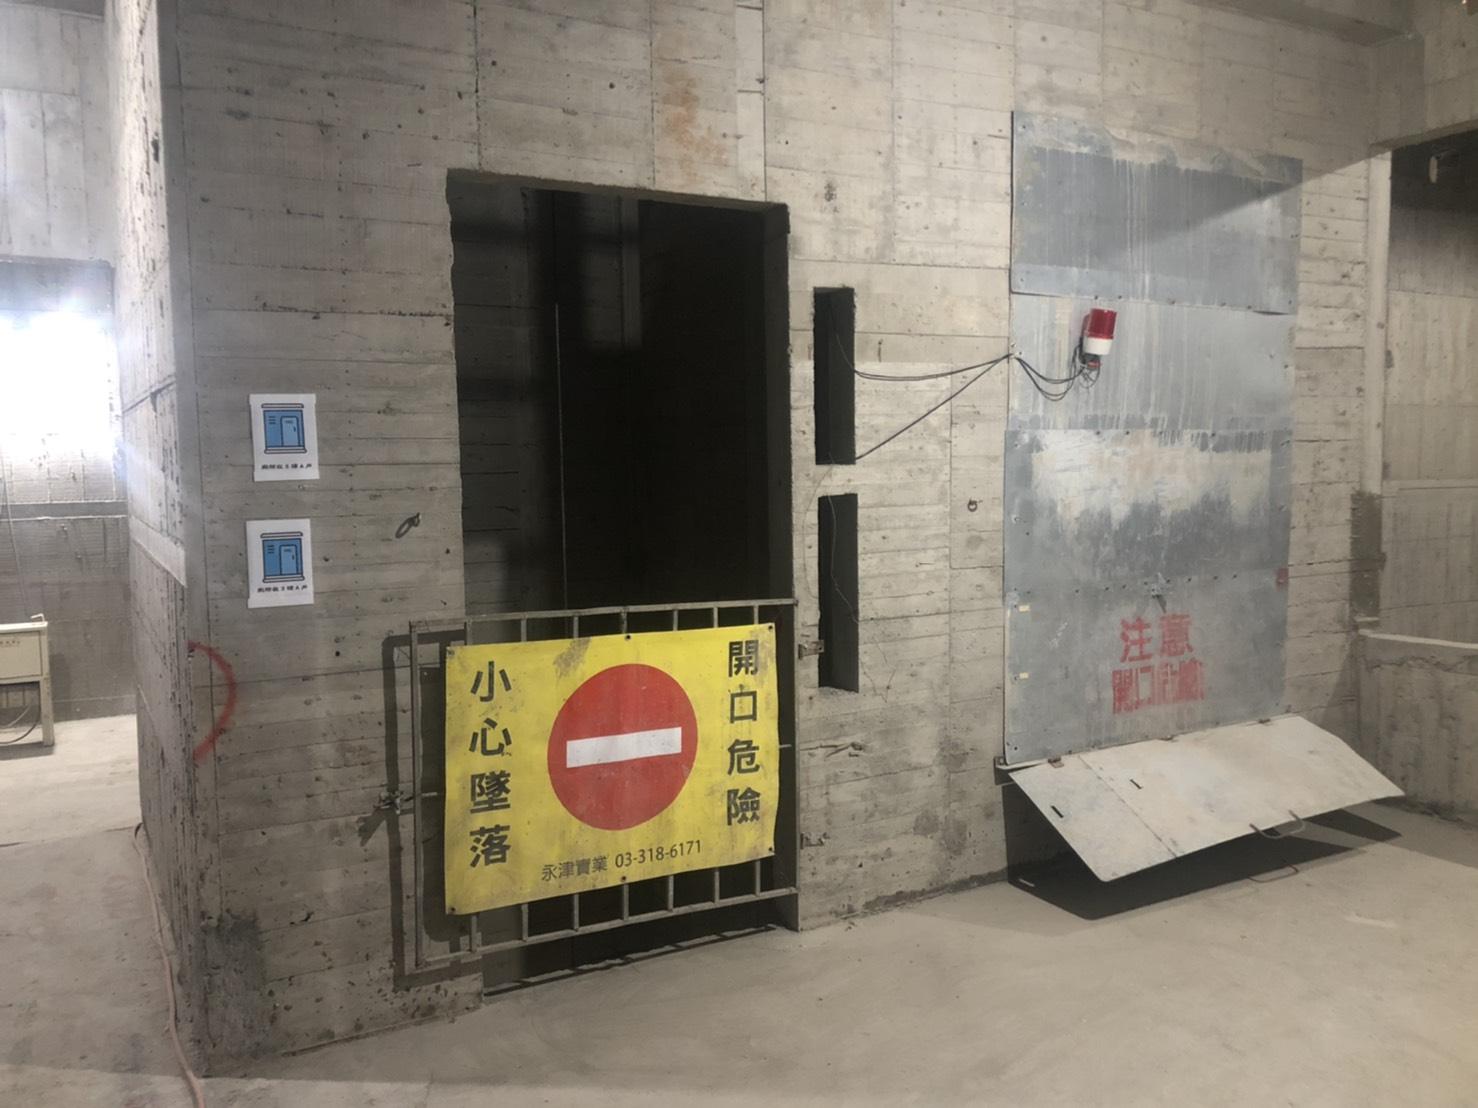 營造業應注意人員的墜落防護，對於有墜落危險的場所應設置護欄或安全網，圖為電梯井警告標示